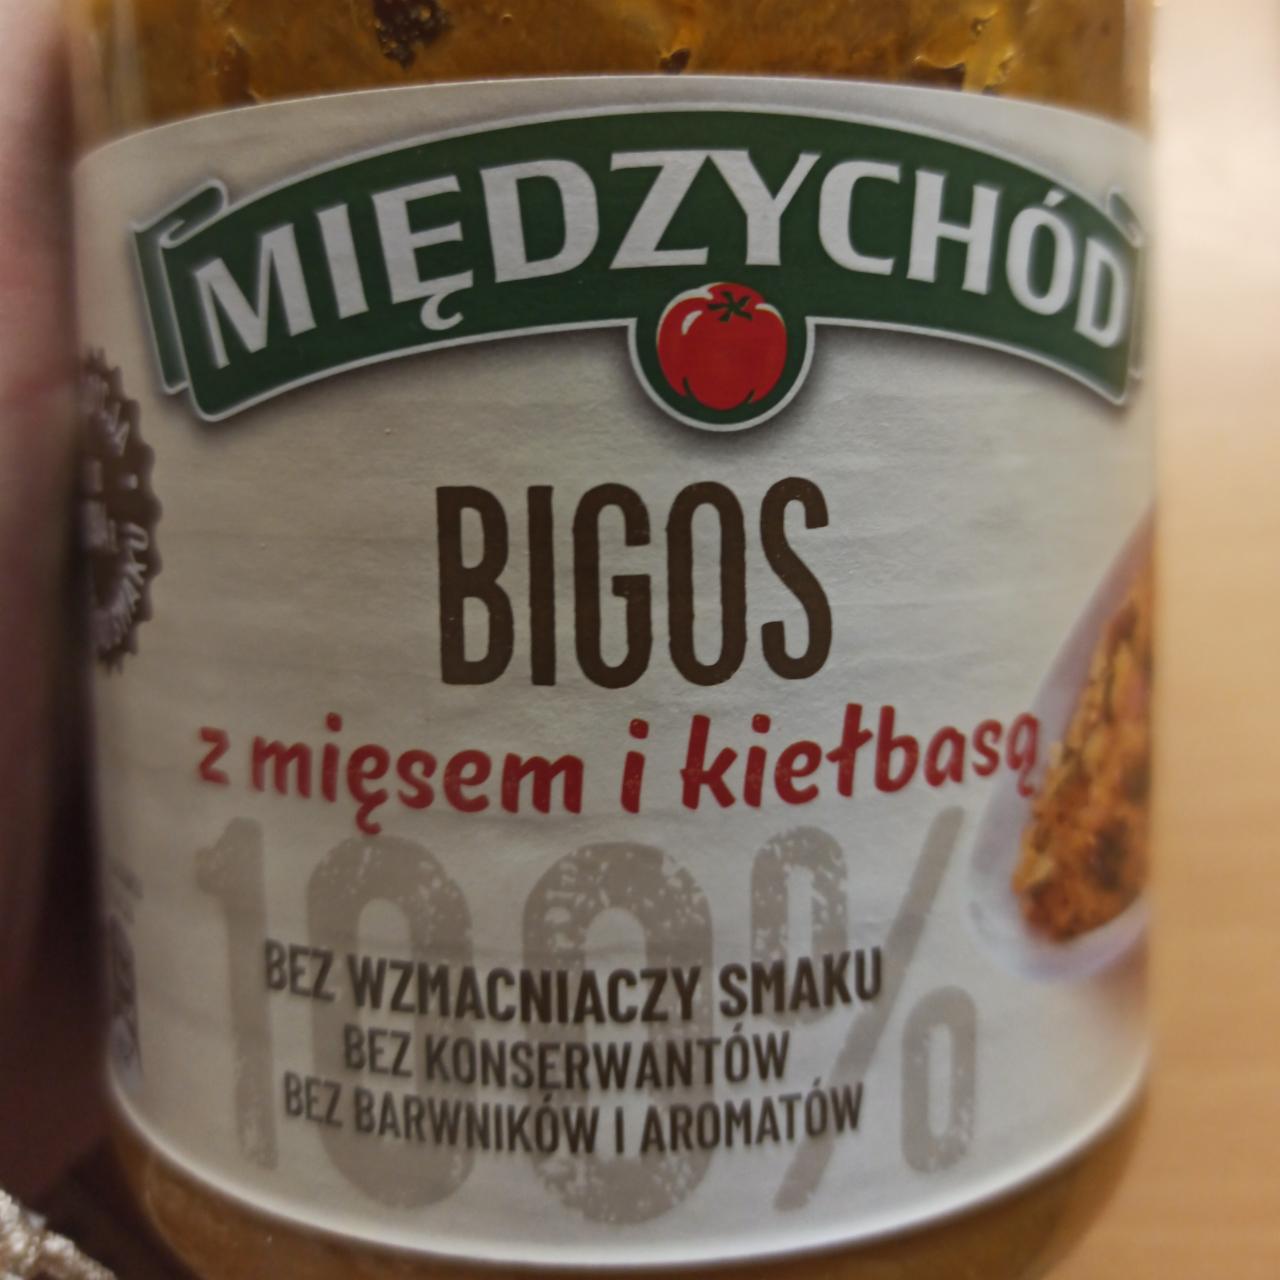 Zdjęcia - Bigos z mięsem i kiełbasa Miedzychód